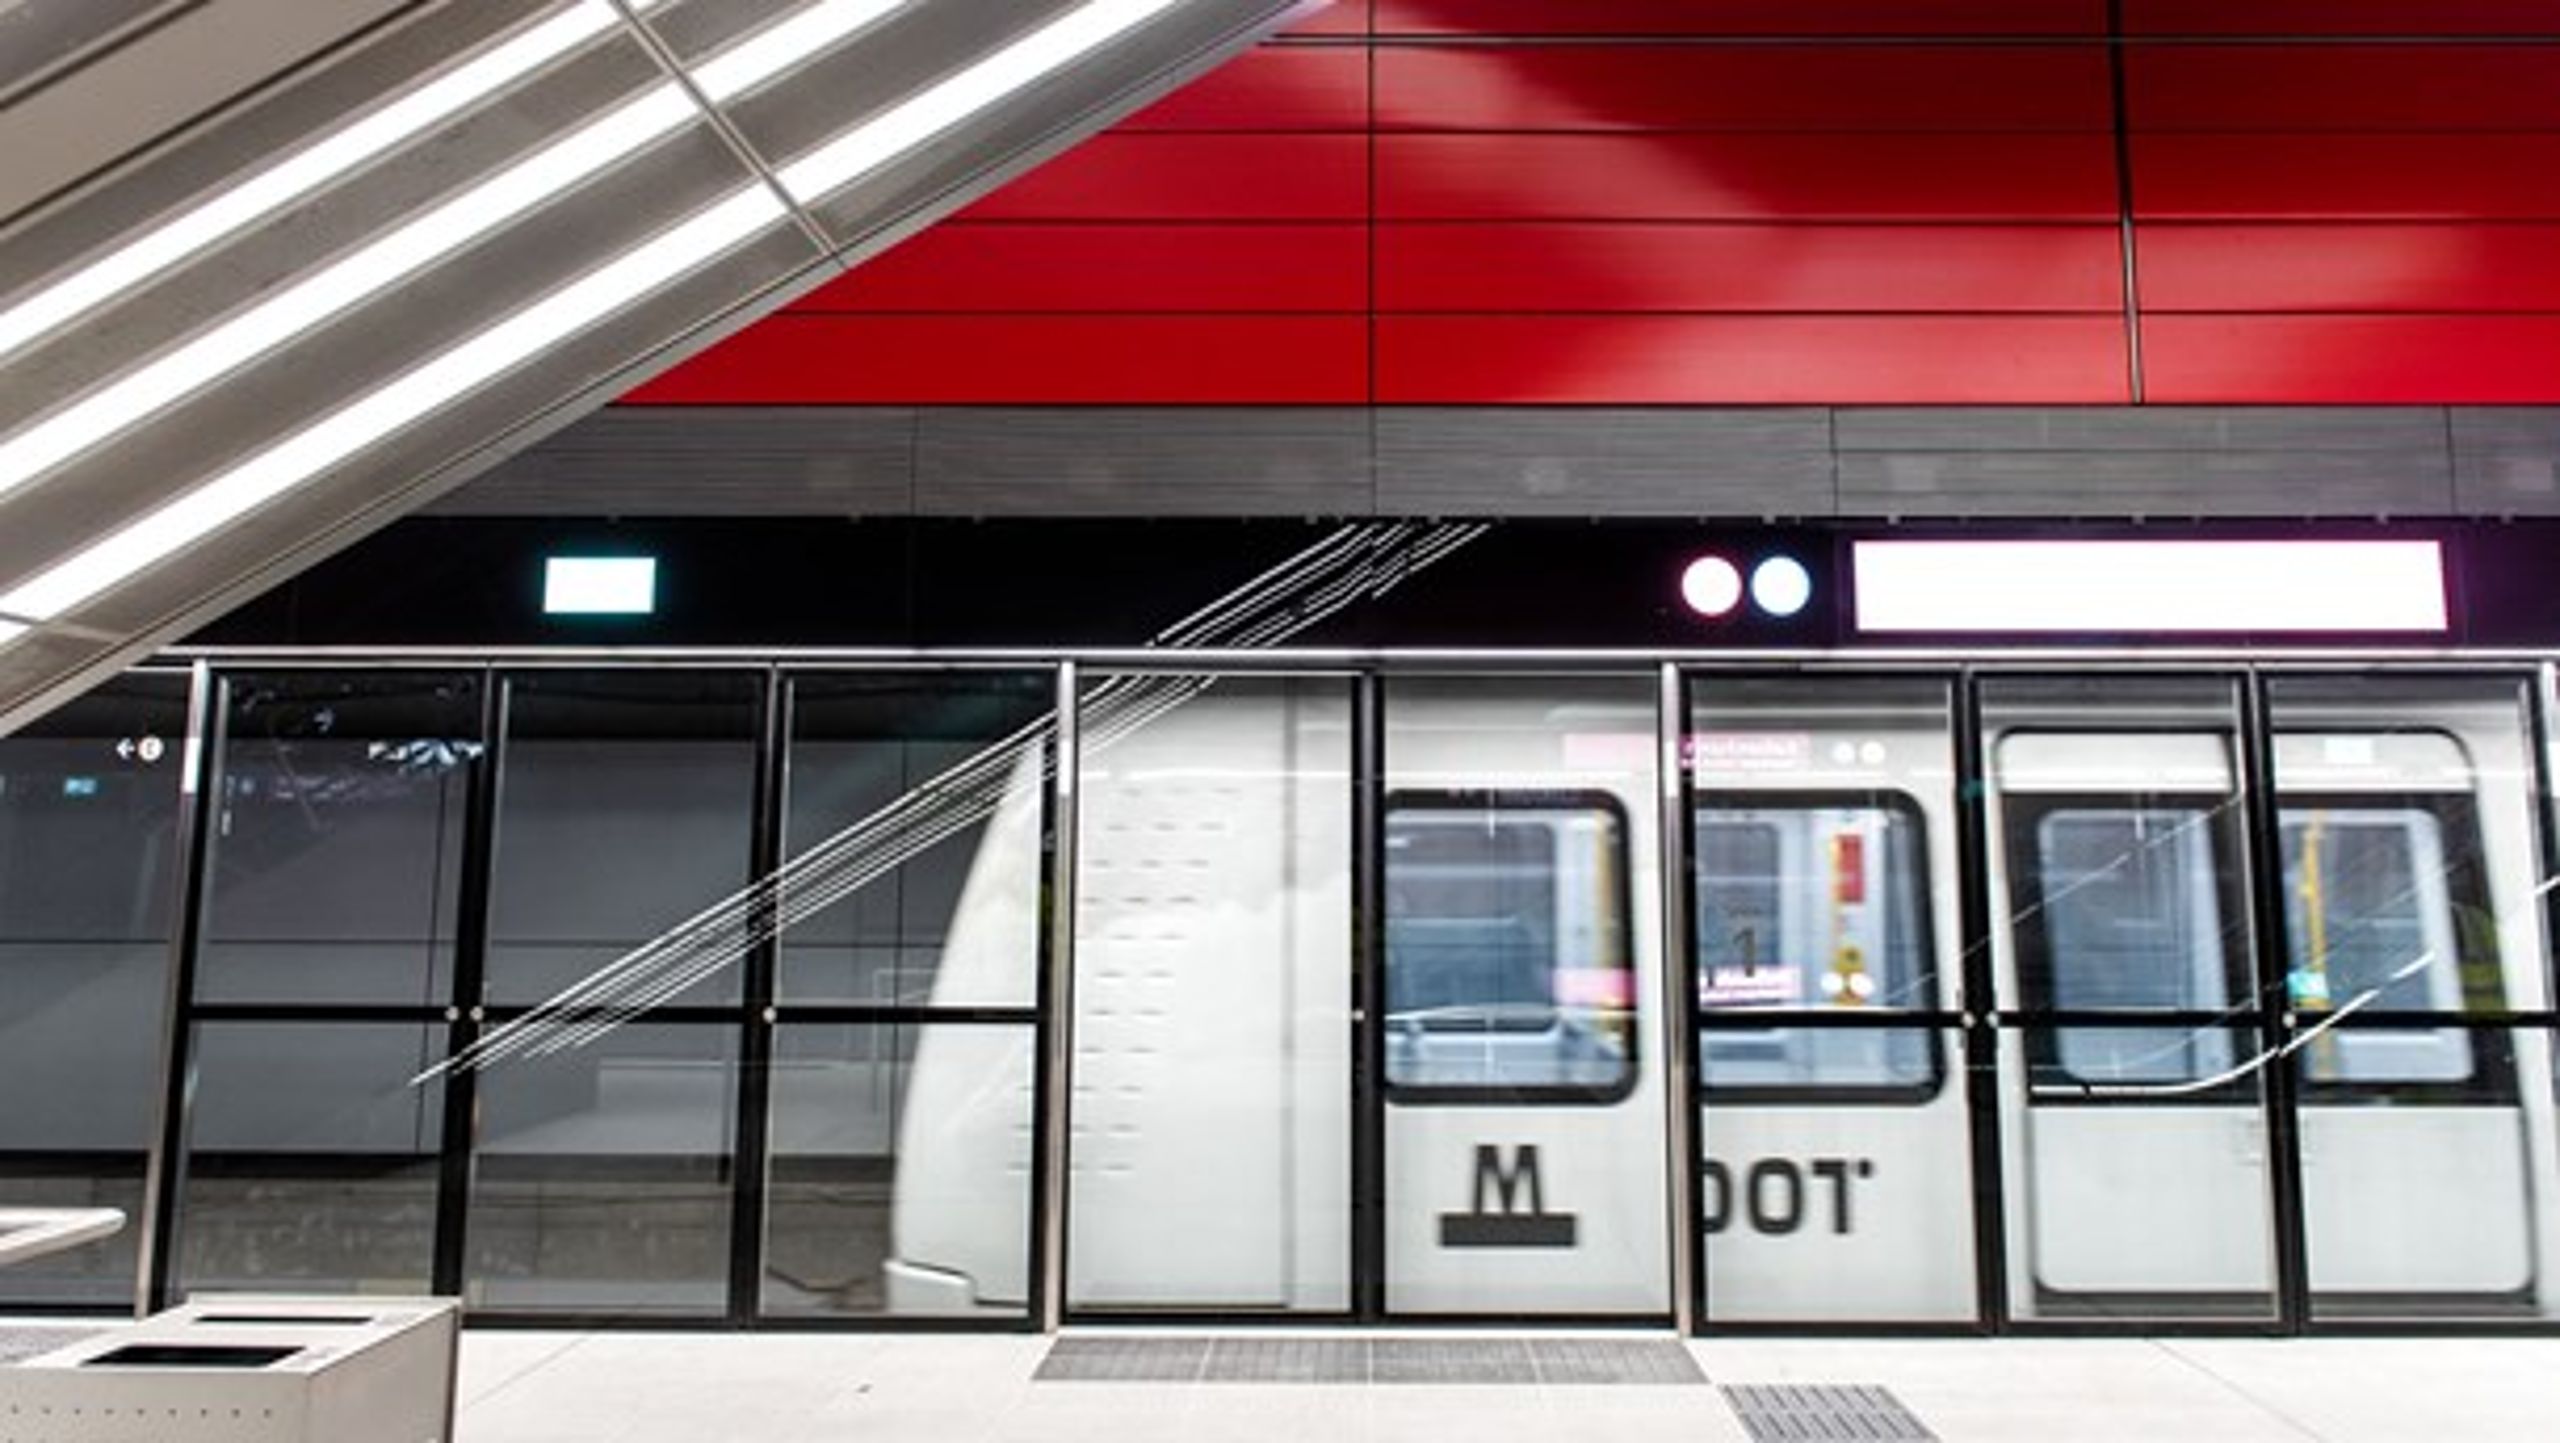 Søndag åbner hovedstadens nye metro linje – Cityringen. Det betyder dyrere billetter på alle metrolinjer.